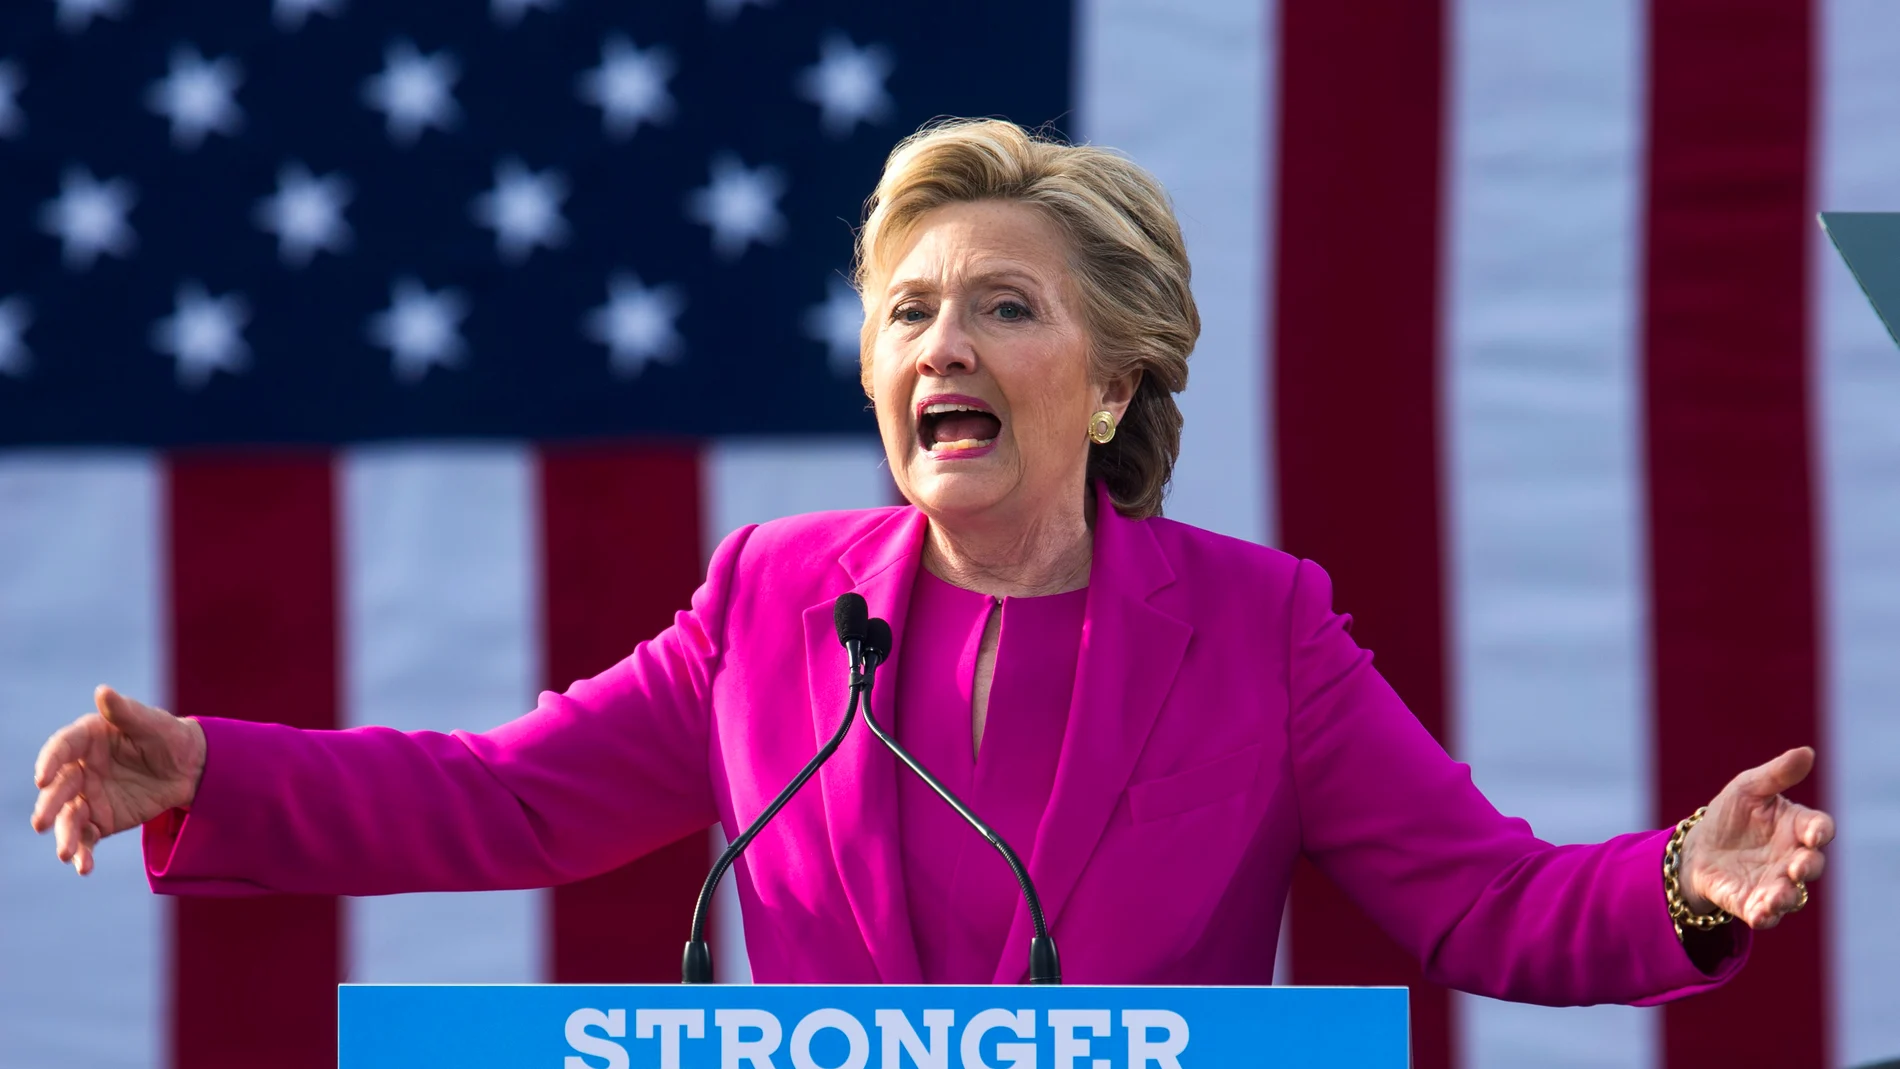 La candidata demócrata para la presidencia de Estados Unidos, Hillary Clinton durante un acto de campaña electoral en Carolina del Norte (EE.UU.)